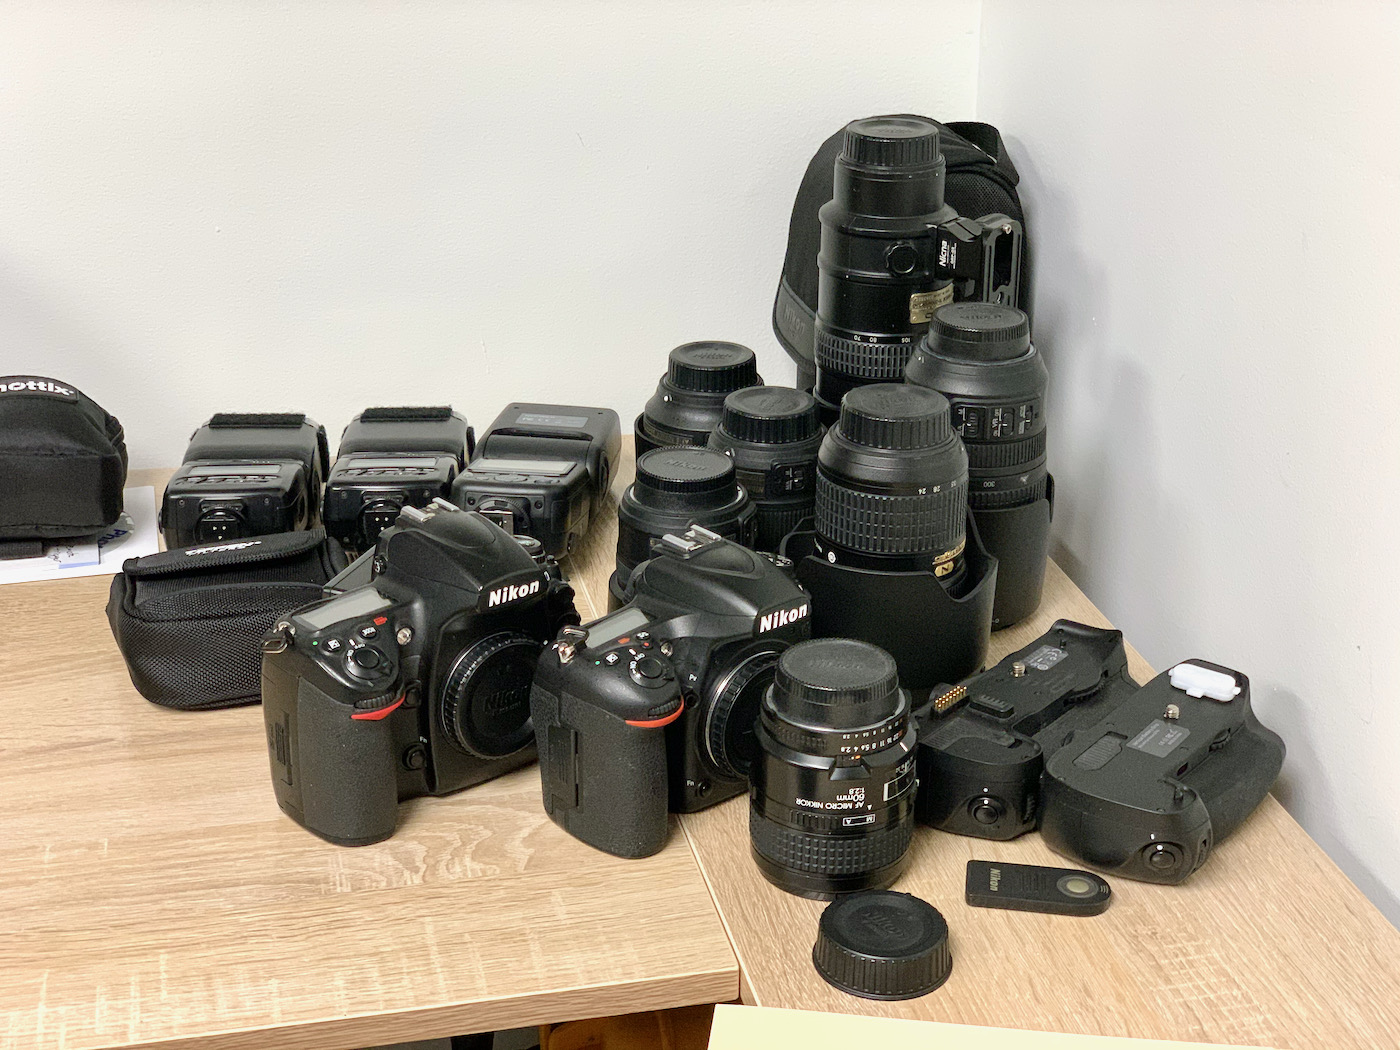 Jeff Geerling's Nikon DSLR photo gear